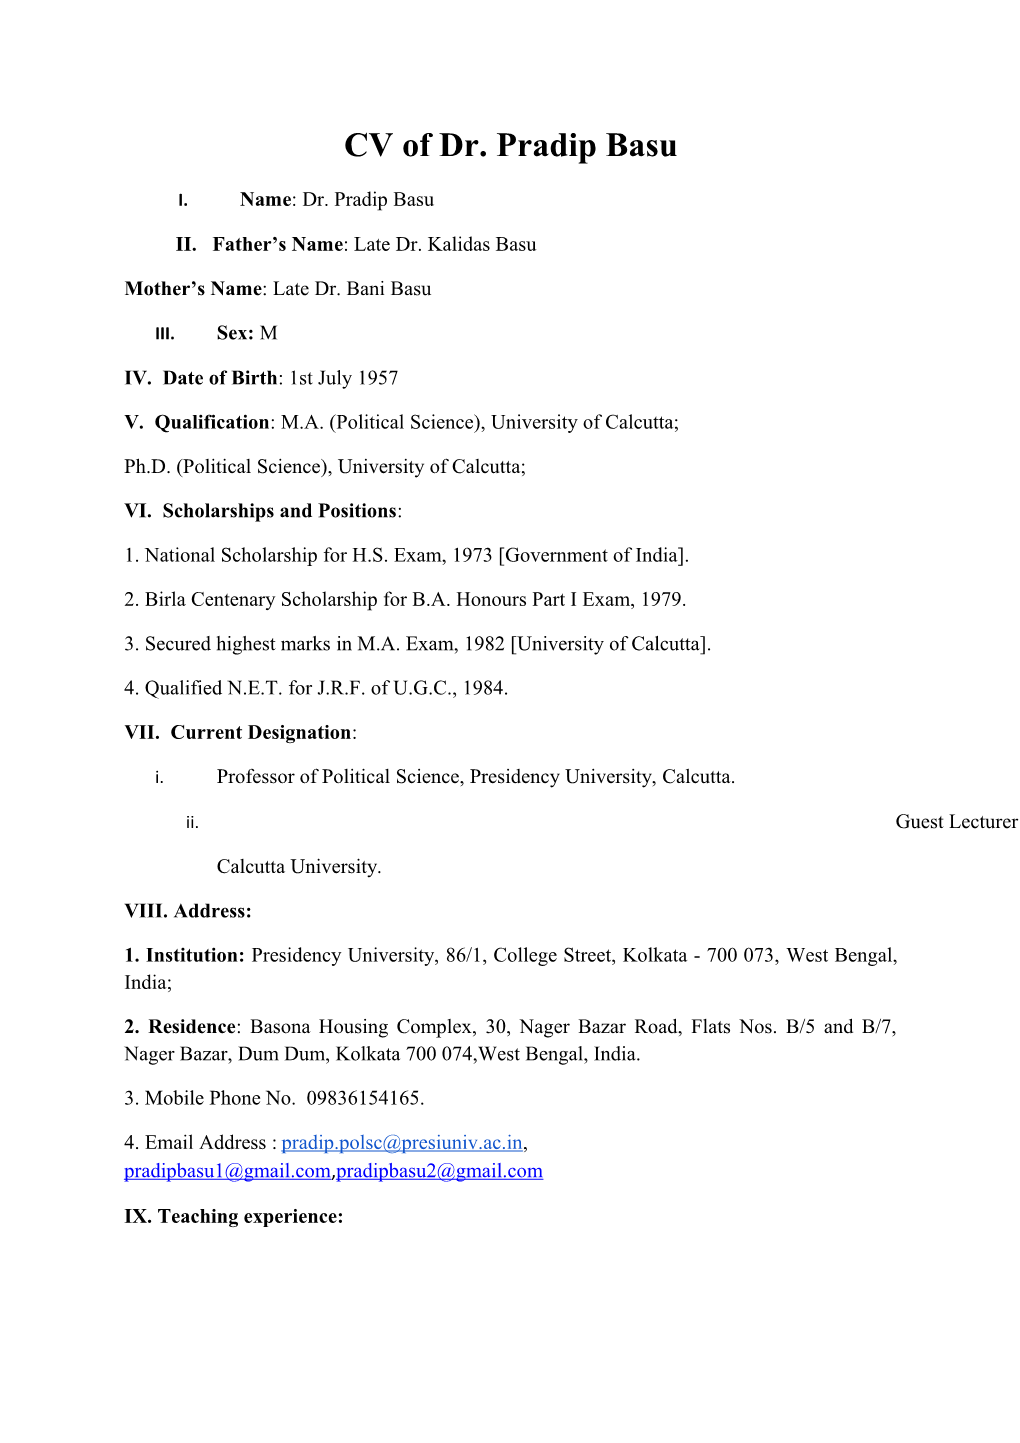 CV of Dr. Pradip Basu